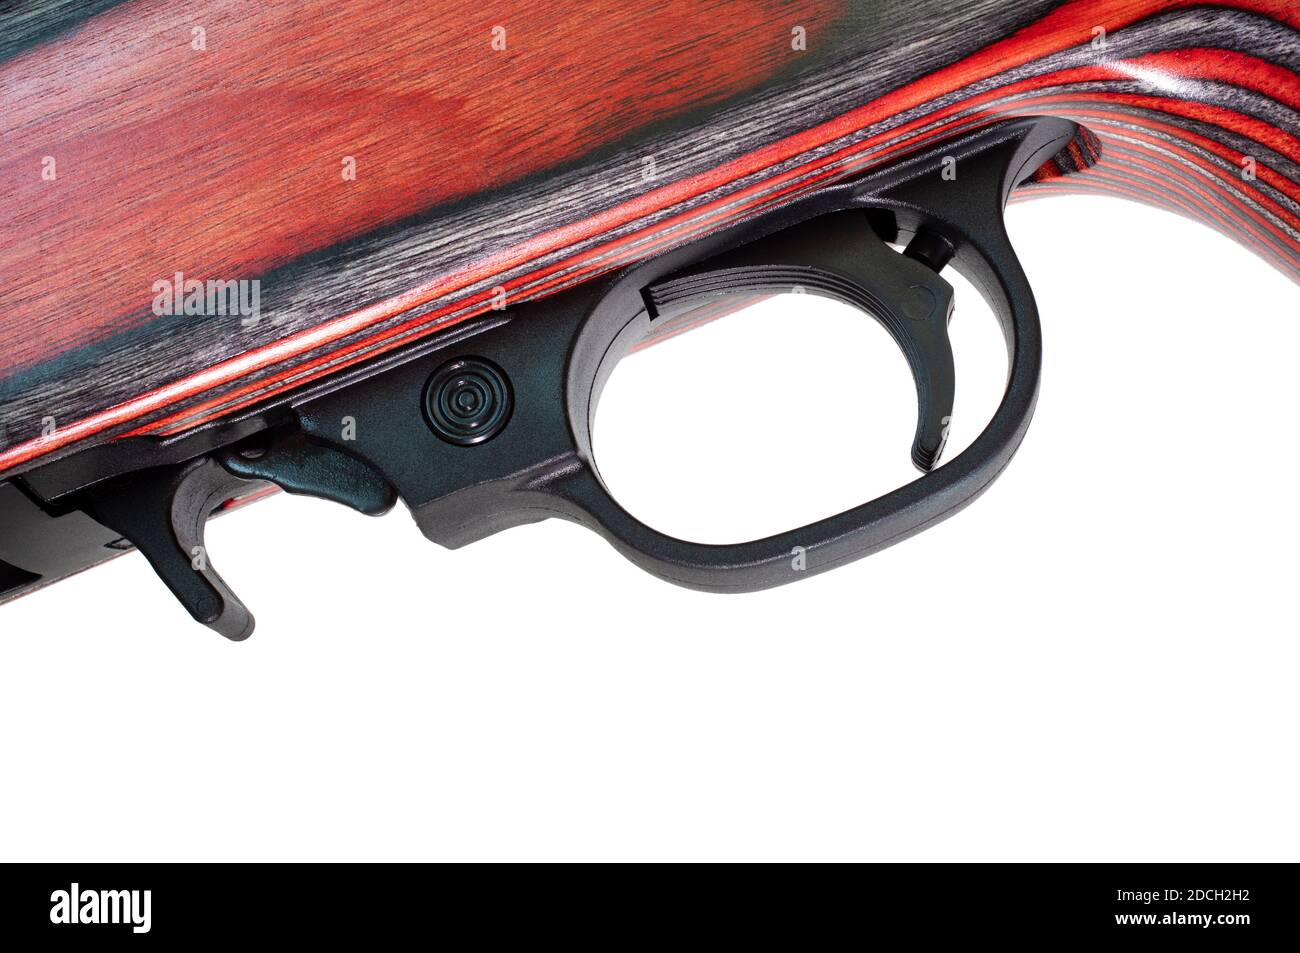 triggeer, libération de magazine et sécurité sur un fusil garni de bois avec laminé rouge et noir Banque D'Images